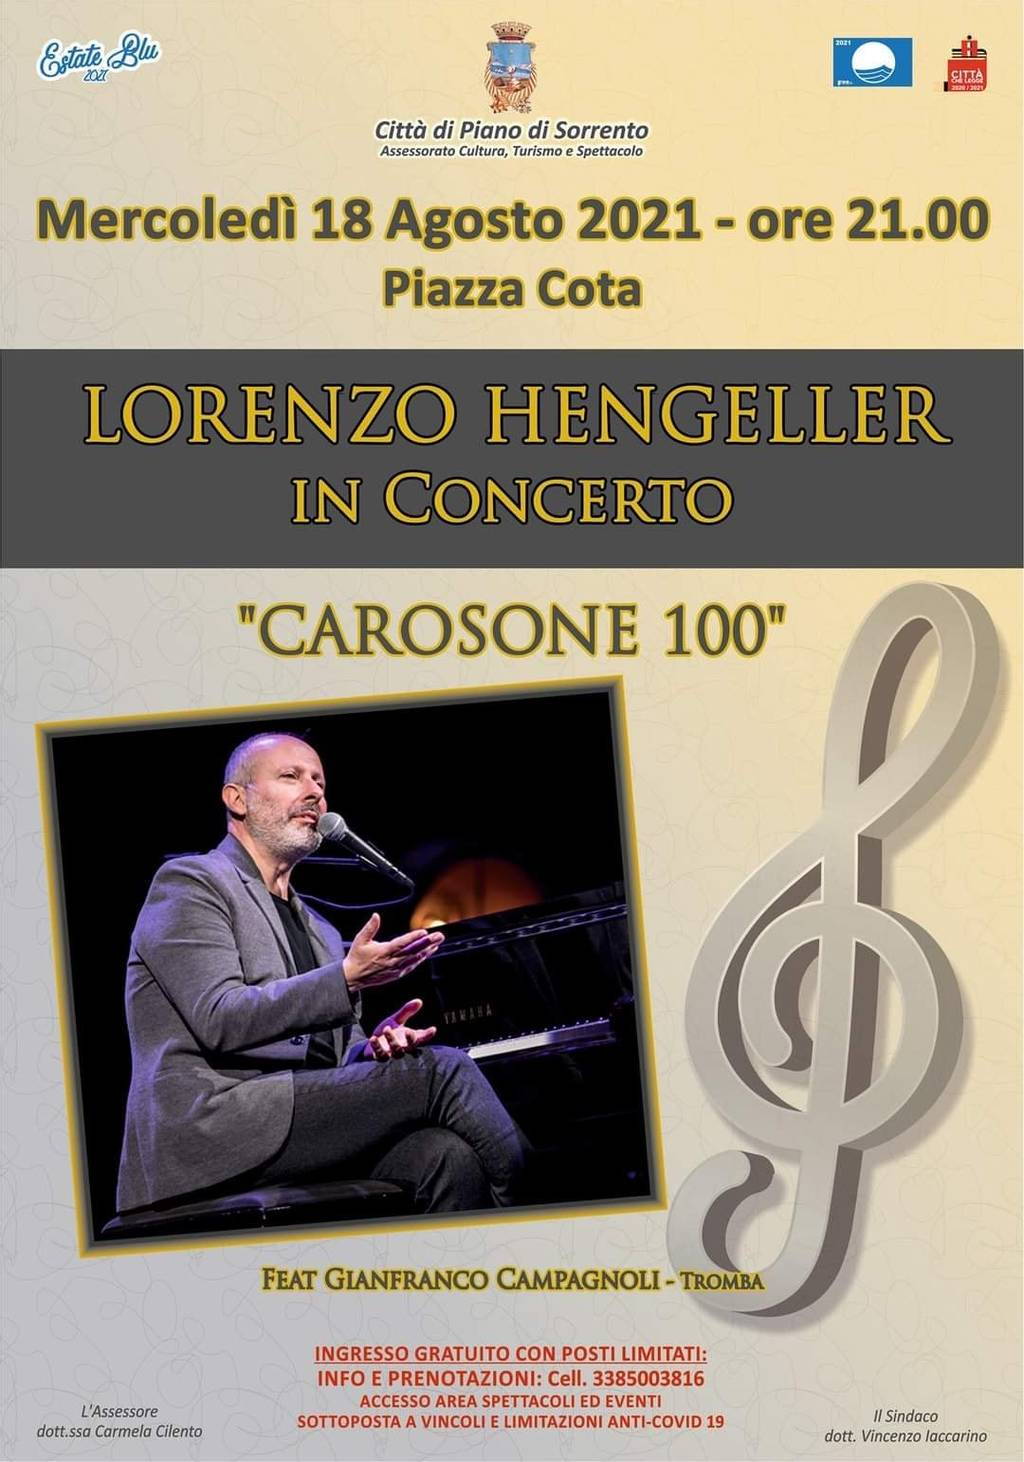 Lorenzo Hengeller in concerto